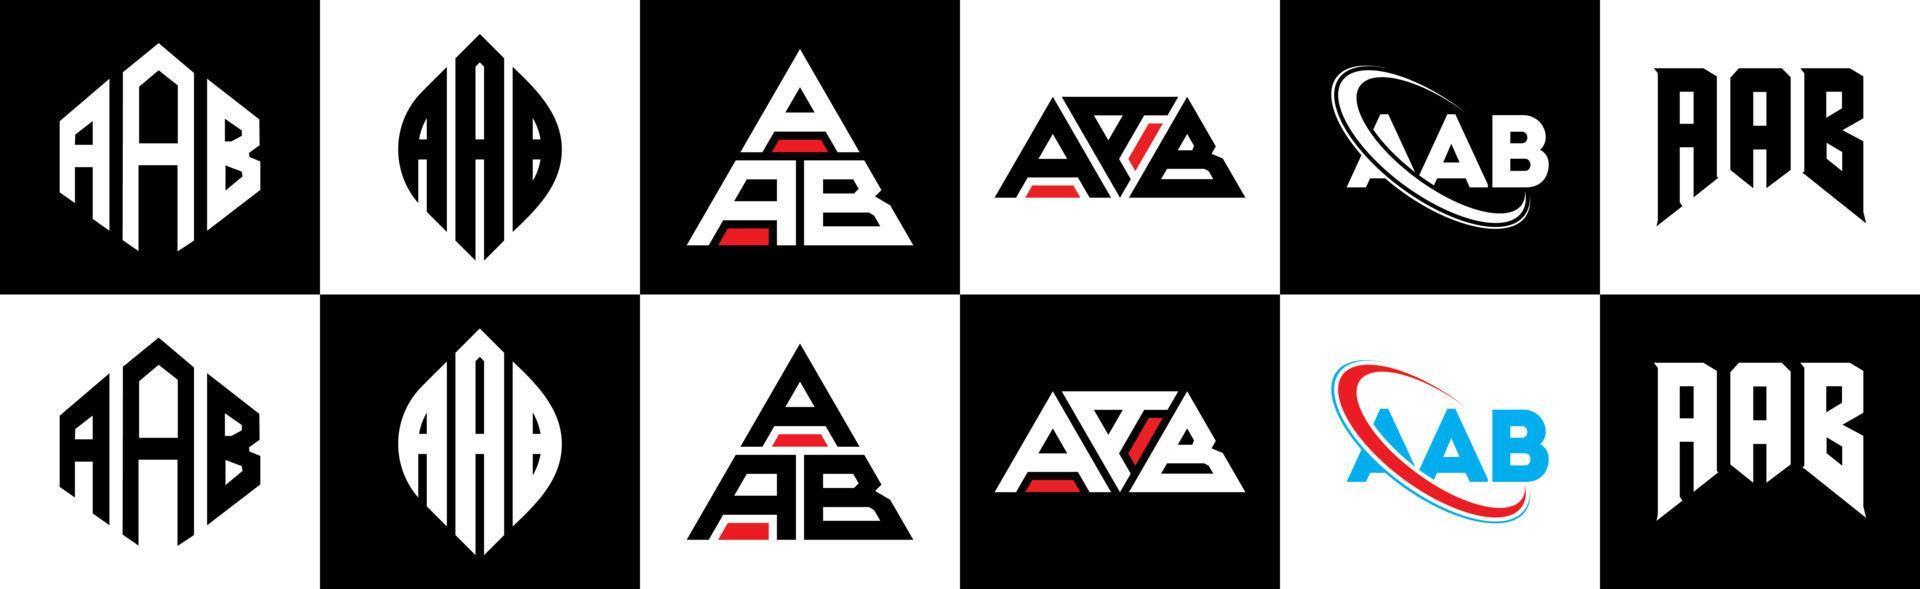 diseño de logotipo de letra aab en seis estilos. aab polígono, círculo, triángulo, hexágono, estilo plano y simple con logotipo de letra de variación de color blanco y negro en una mesa de trabajo. aab logotipo minimalista y clásico vector